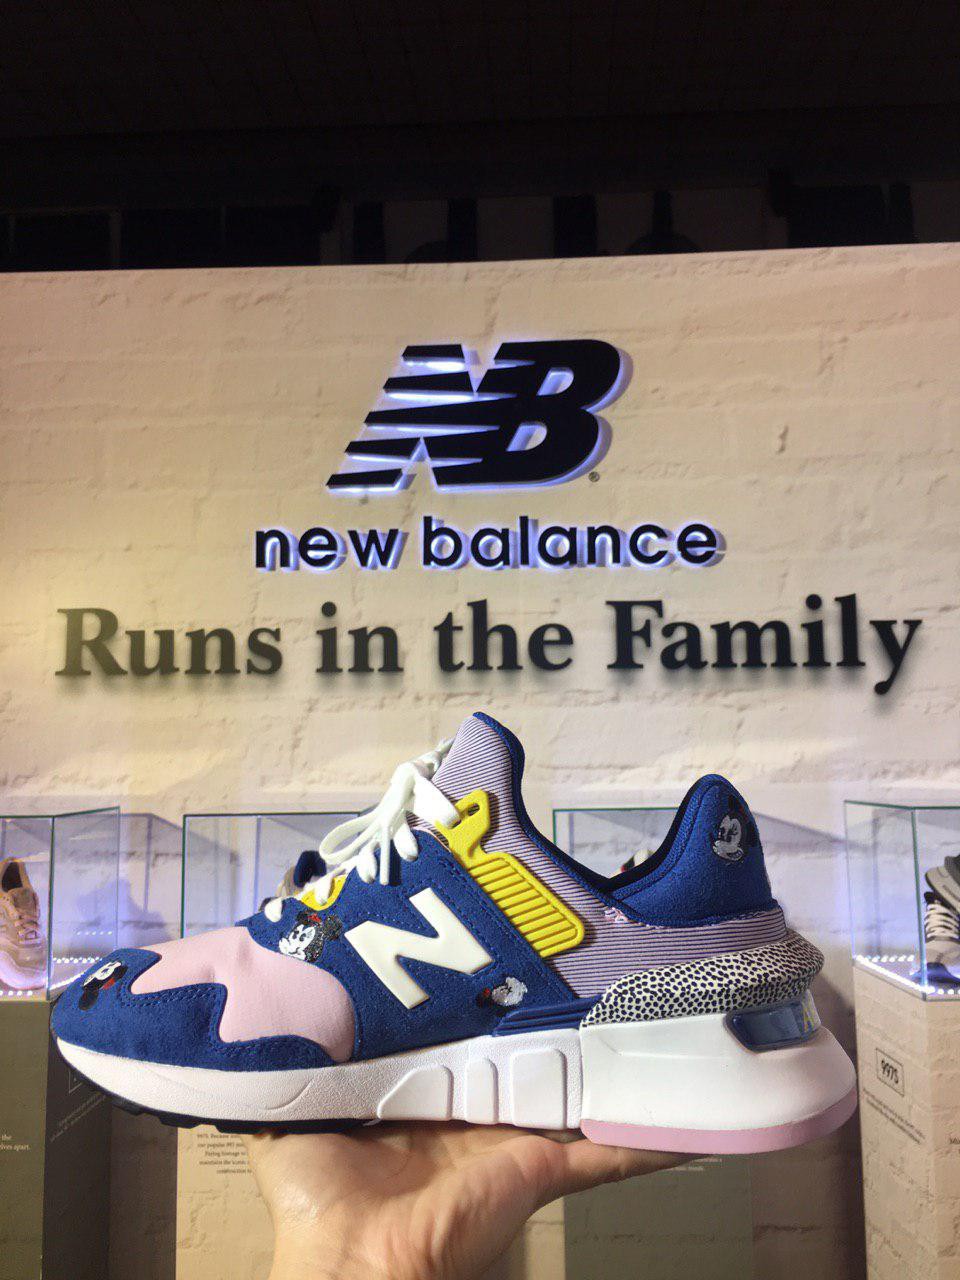 New Balance khuấy đảo Sneaker Fest 2019 với những siêu phẩm giày độc đáo! - Ảnh 10.